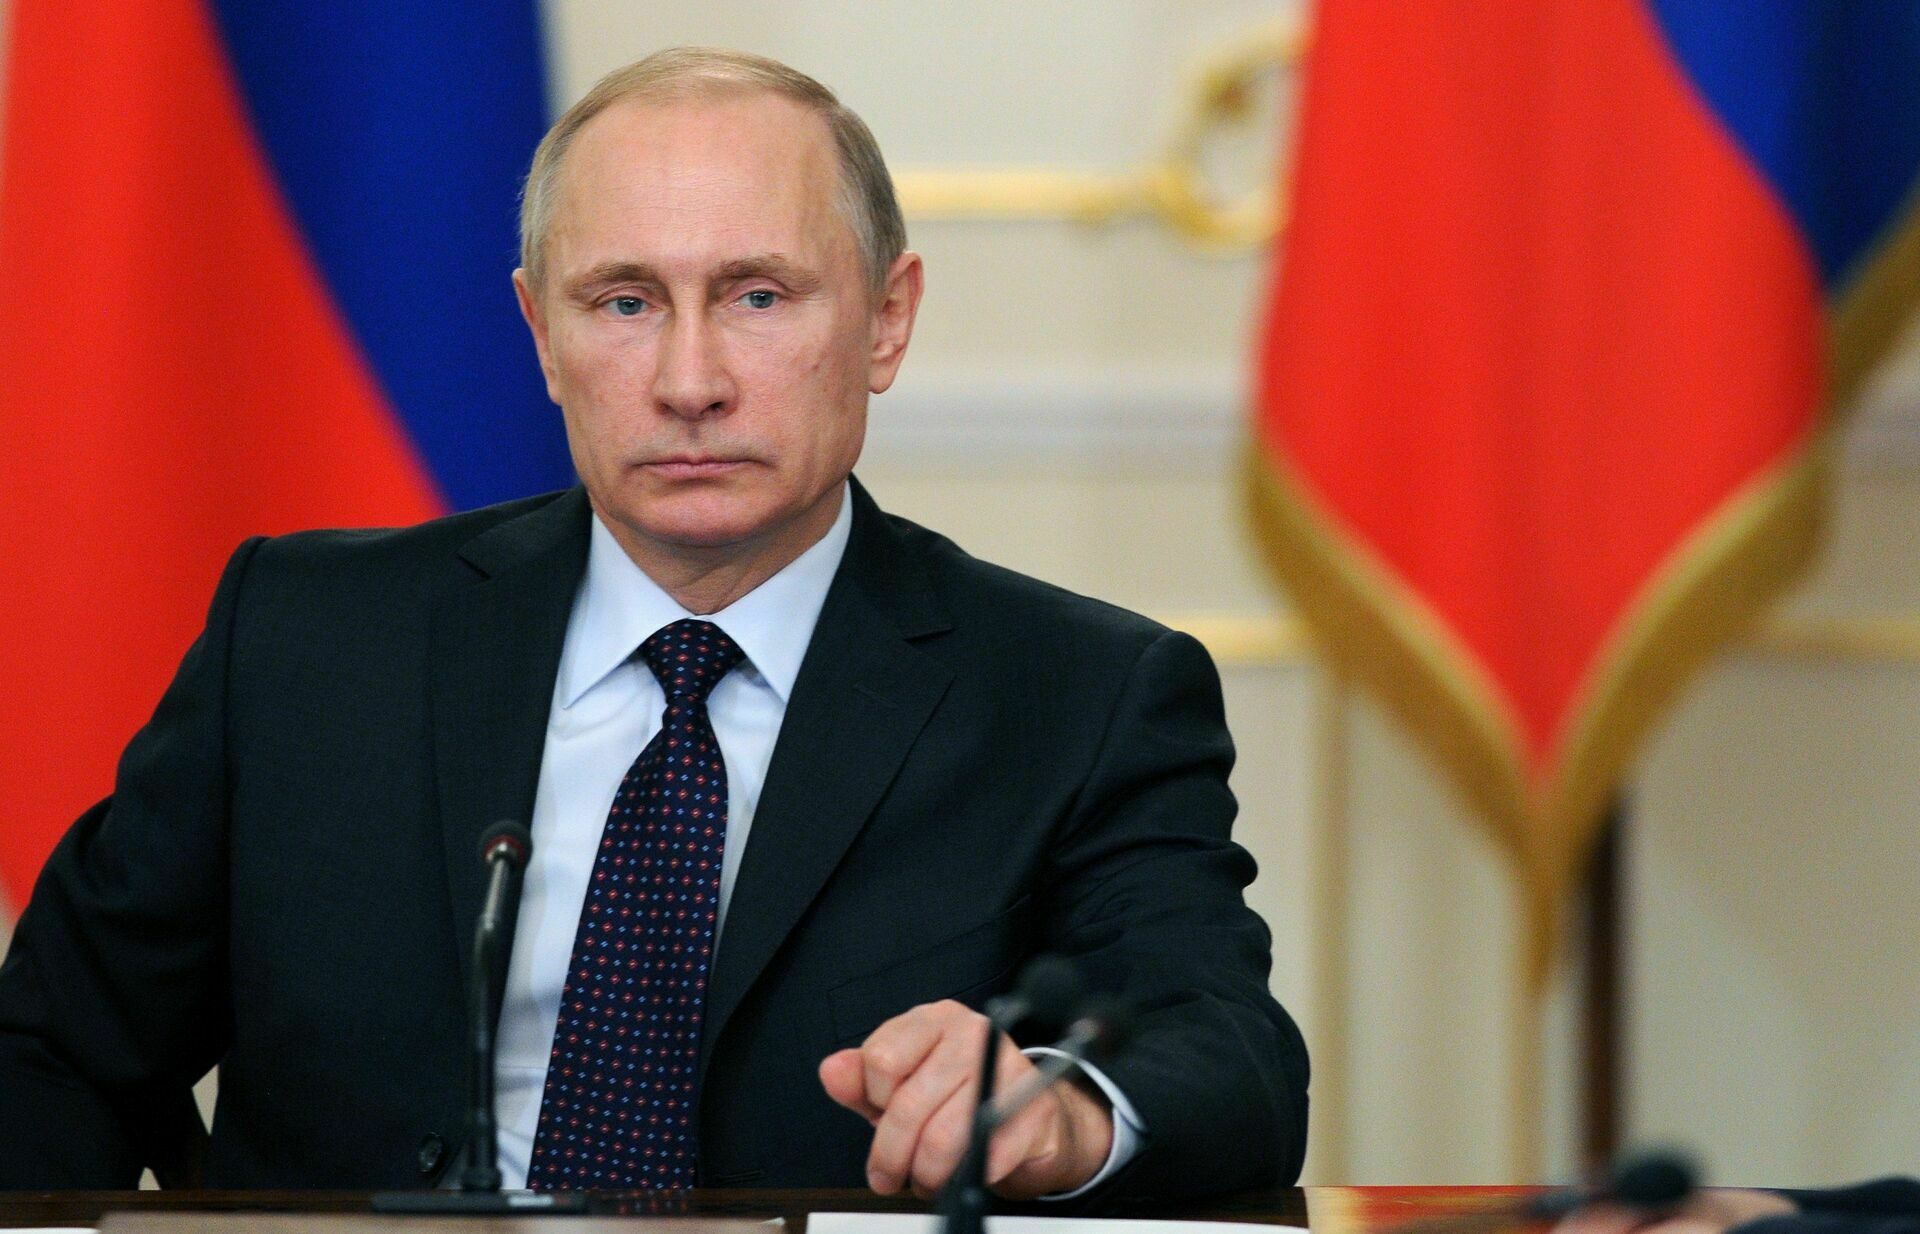 Путин потребовал срочно помочь Дагестану в борьбе с коронавирусом